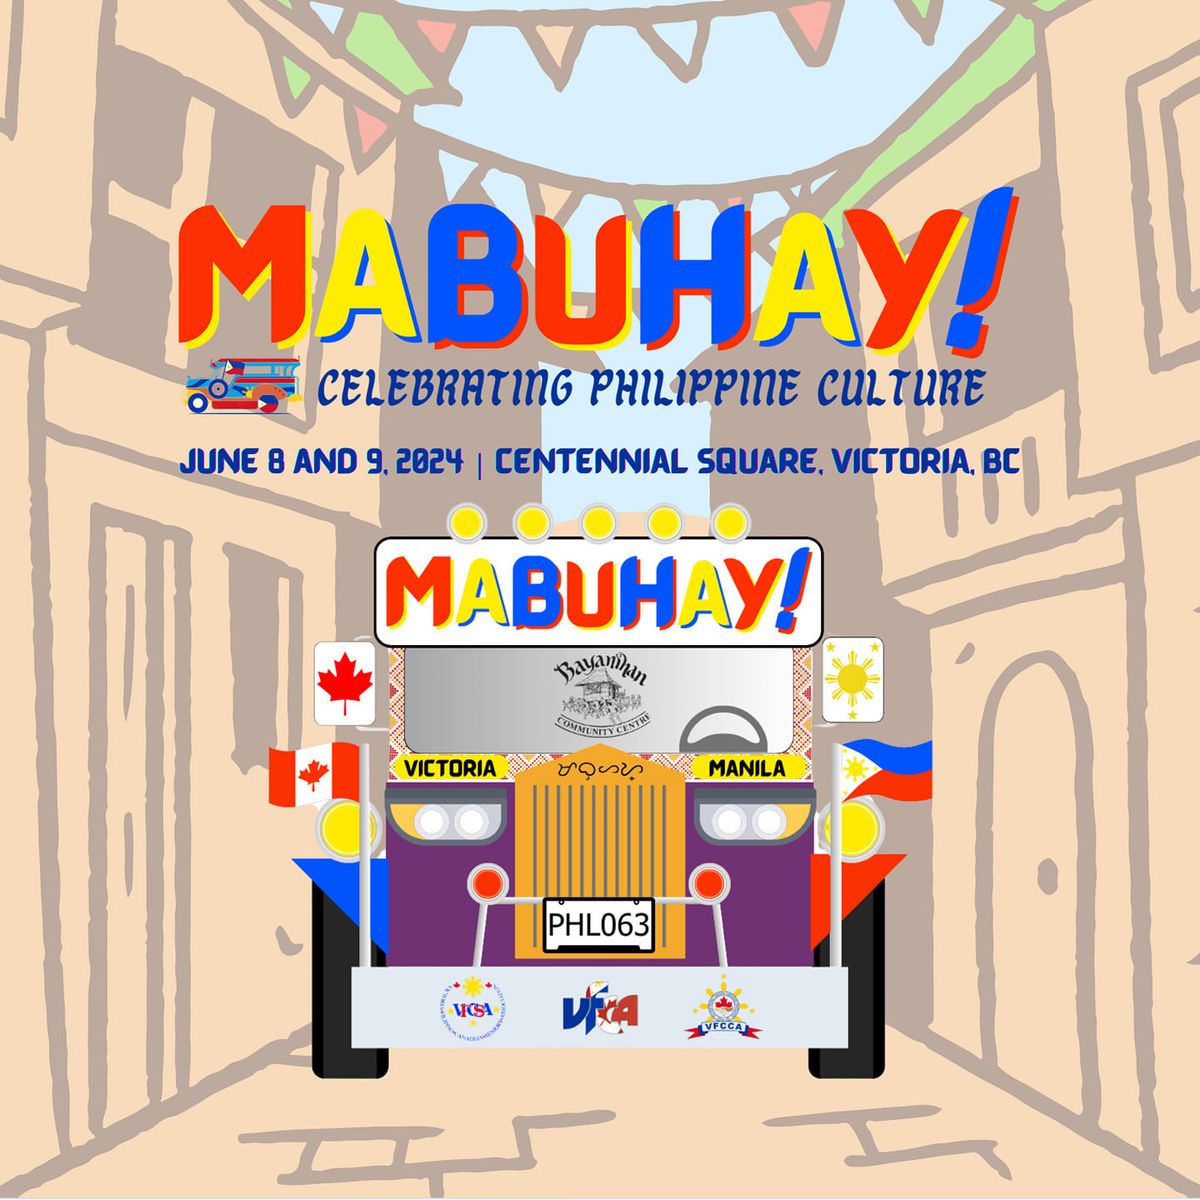 Mabuhay! Celebrating Philippine Culture